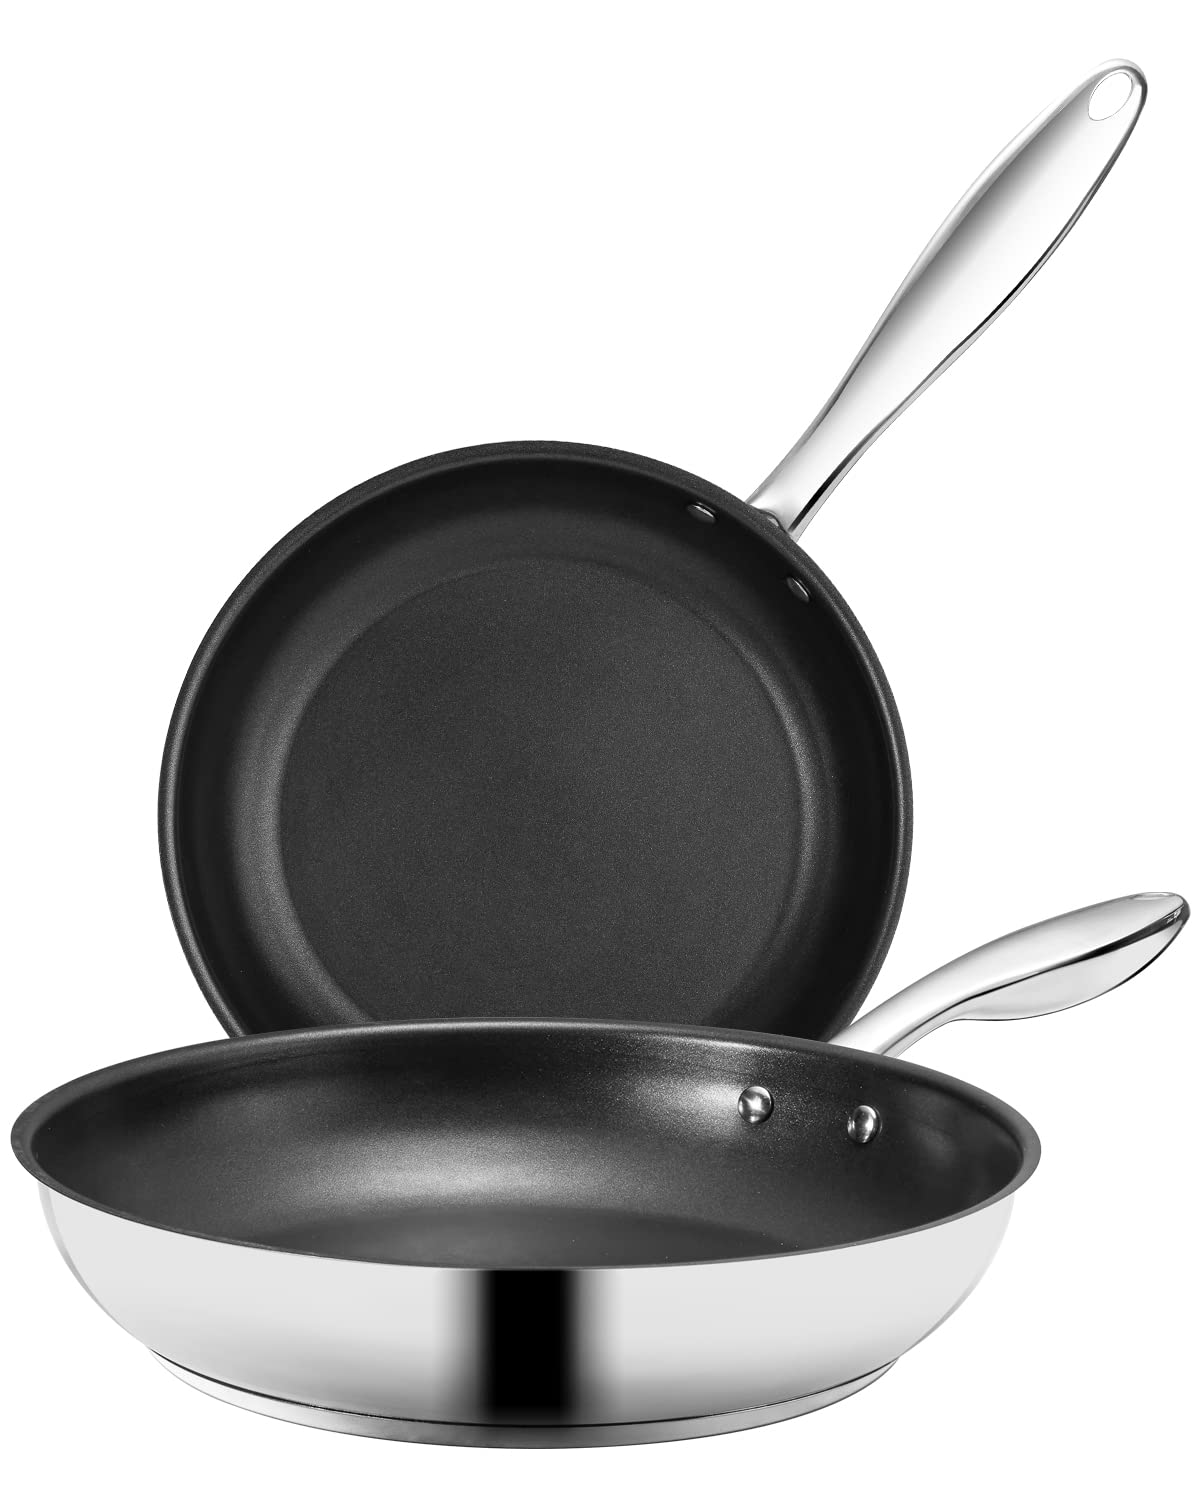 OAKSWARE Nonstick Frying Pan Set